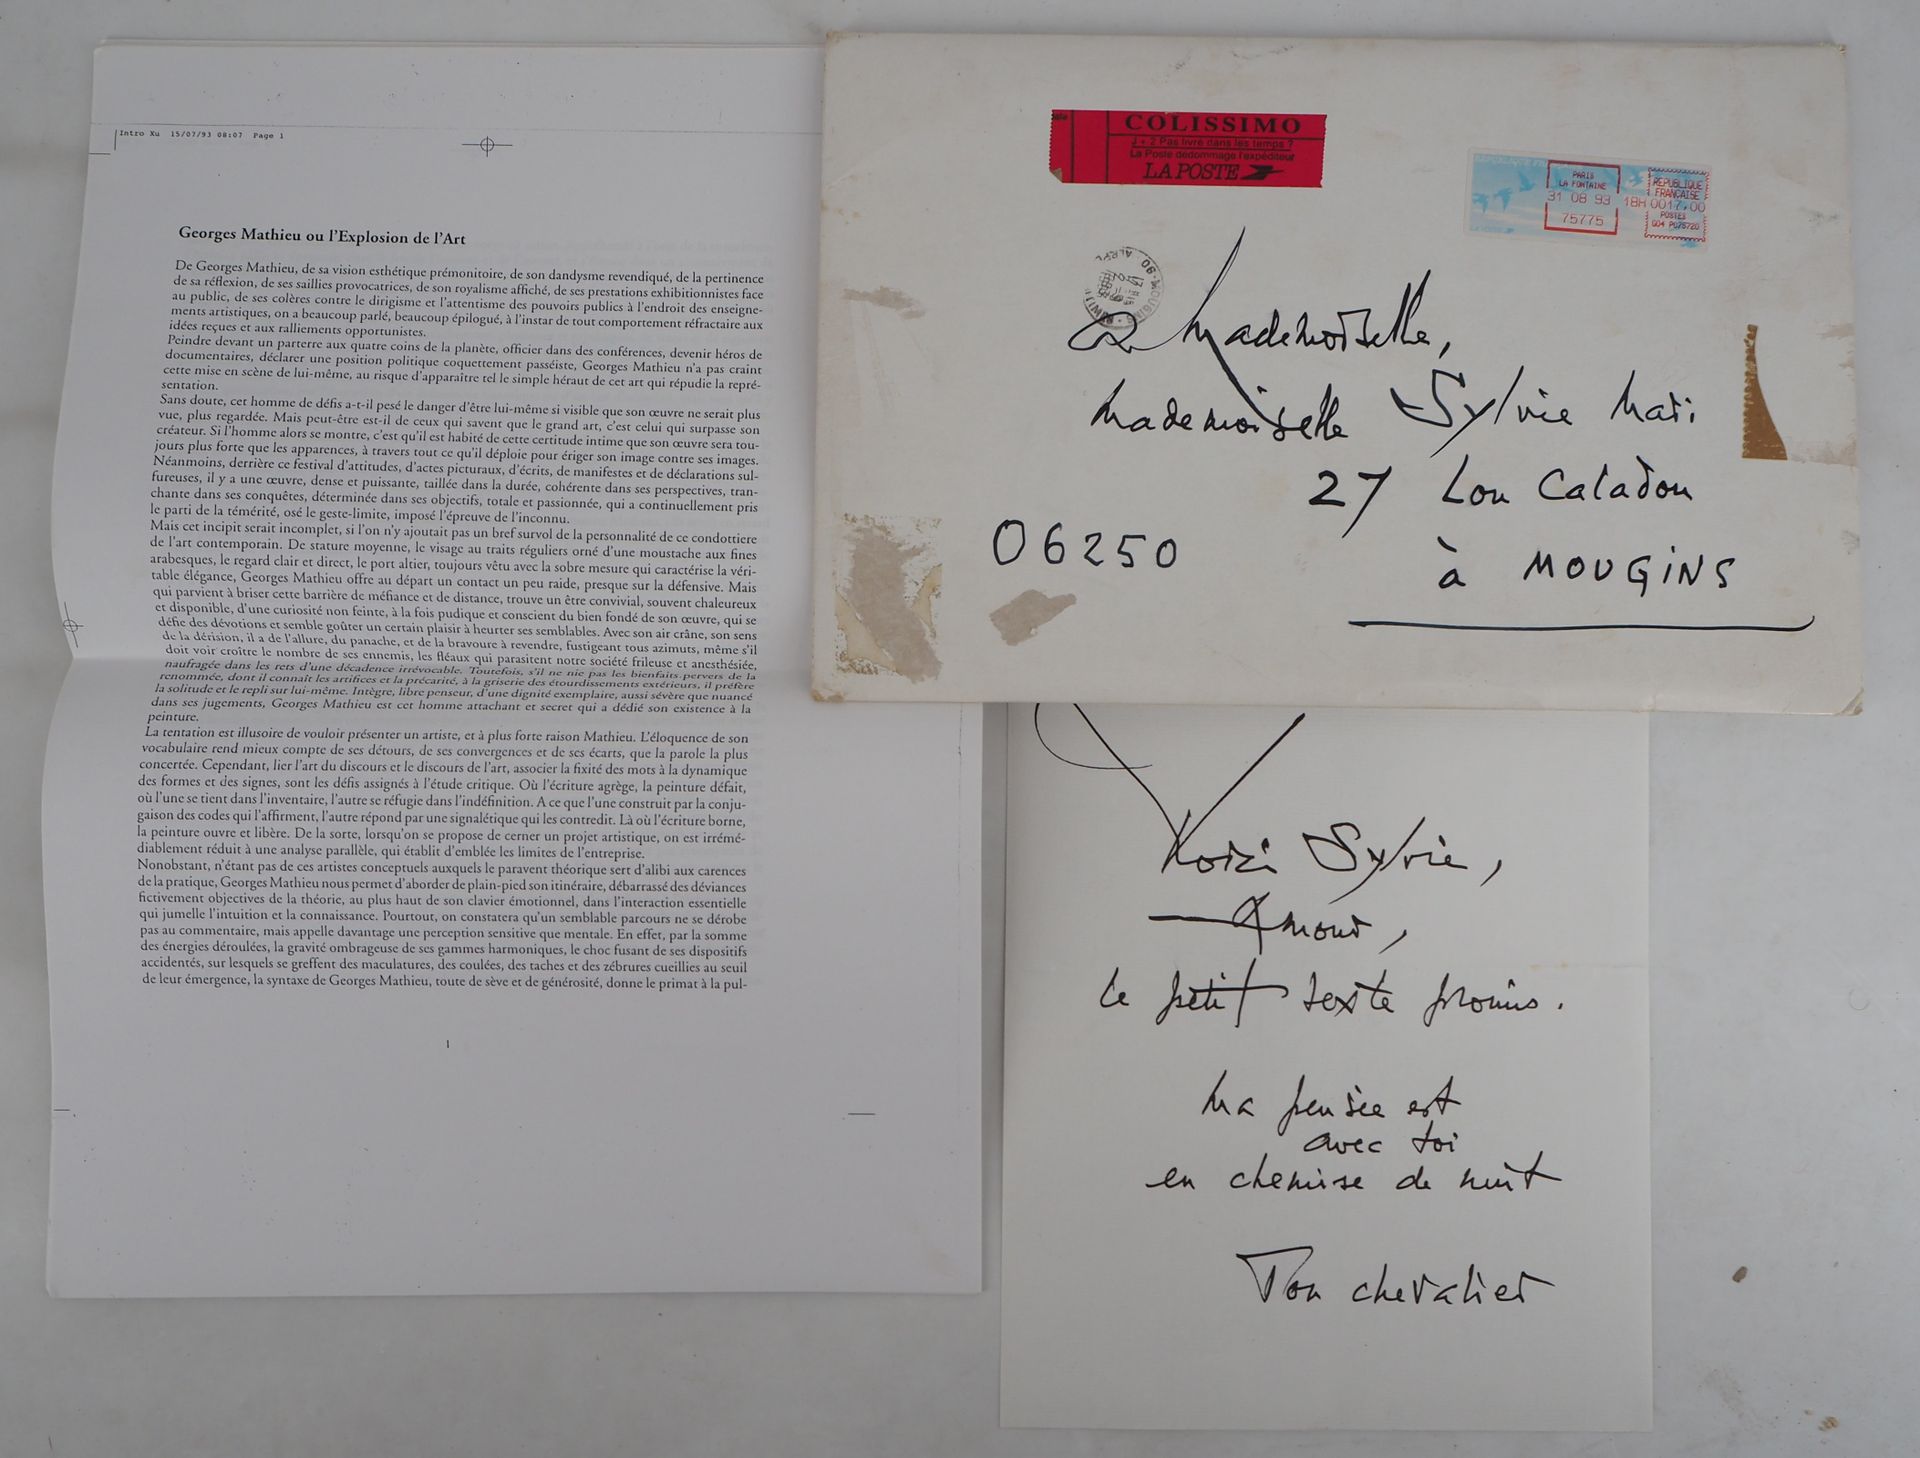 Georges MATHIEU Georges MATHIEU

手写的信，1993年

墨水手写的信

附有一篇题为 "乔治-马蒂厄或艺术博览会 "的文章（1&hellip;